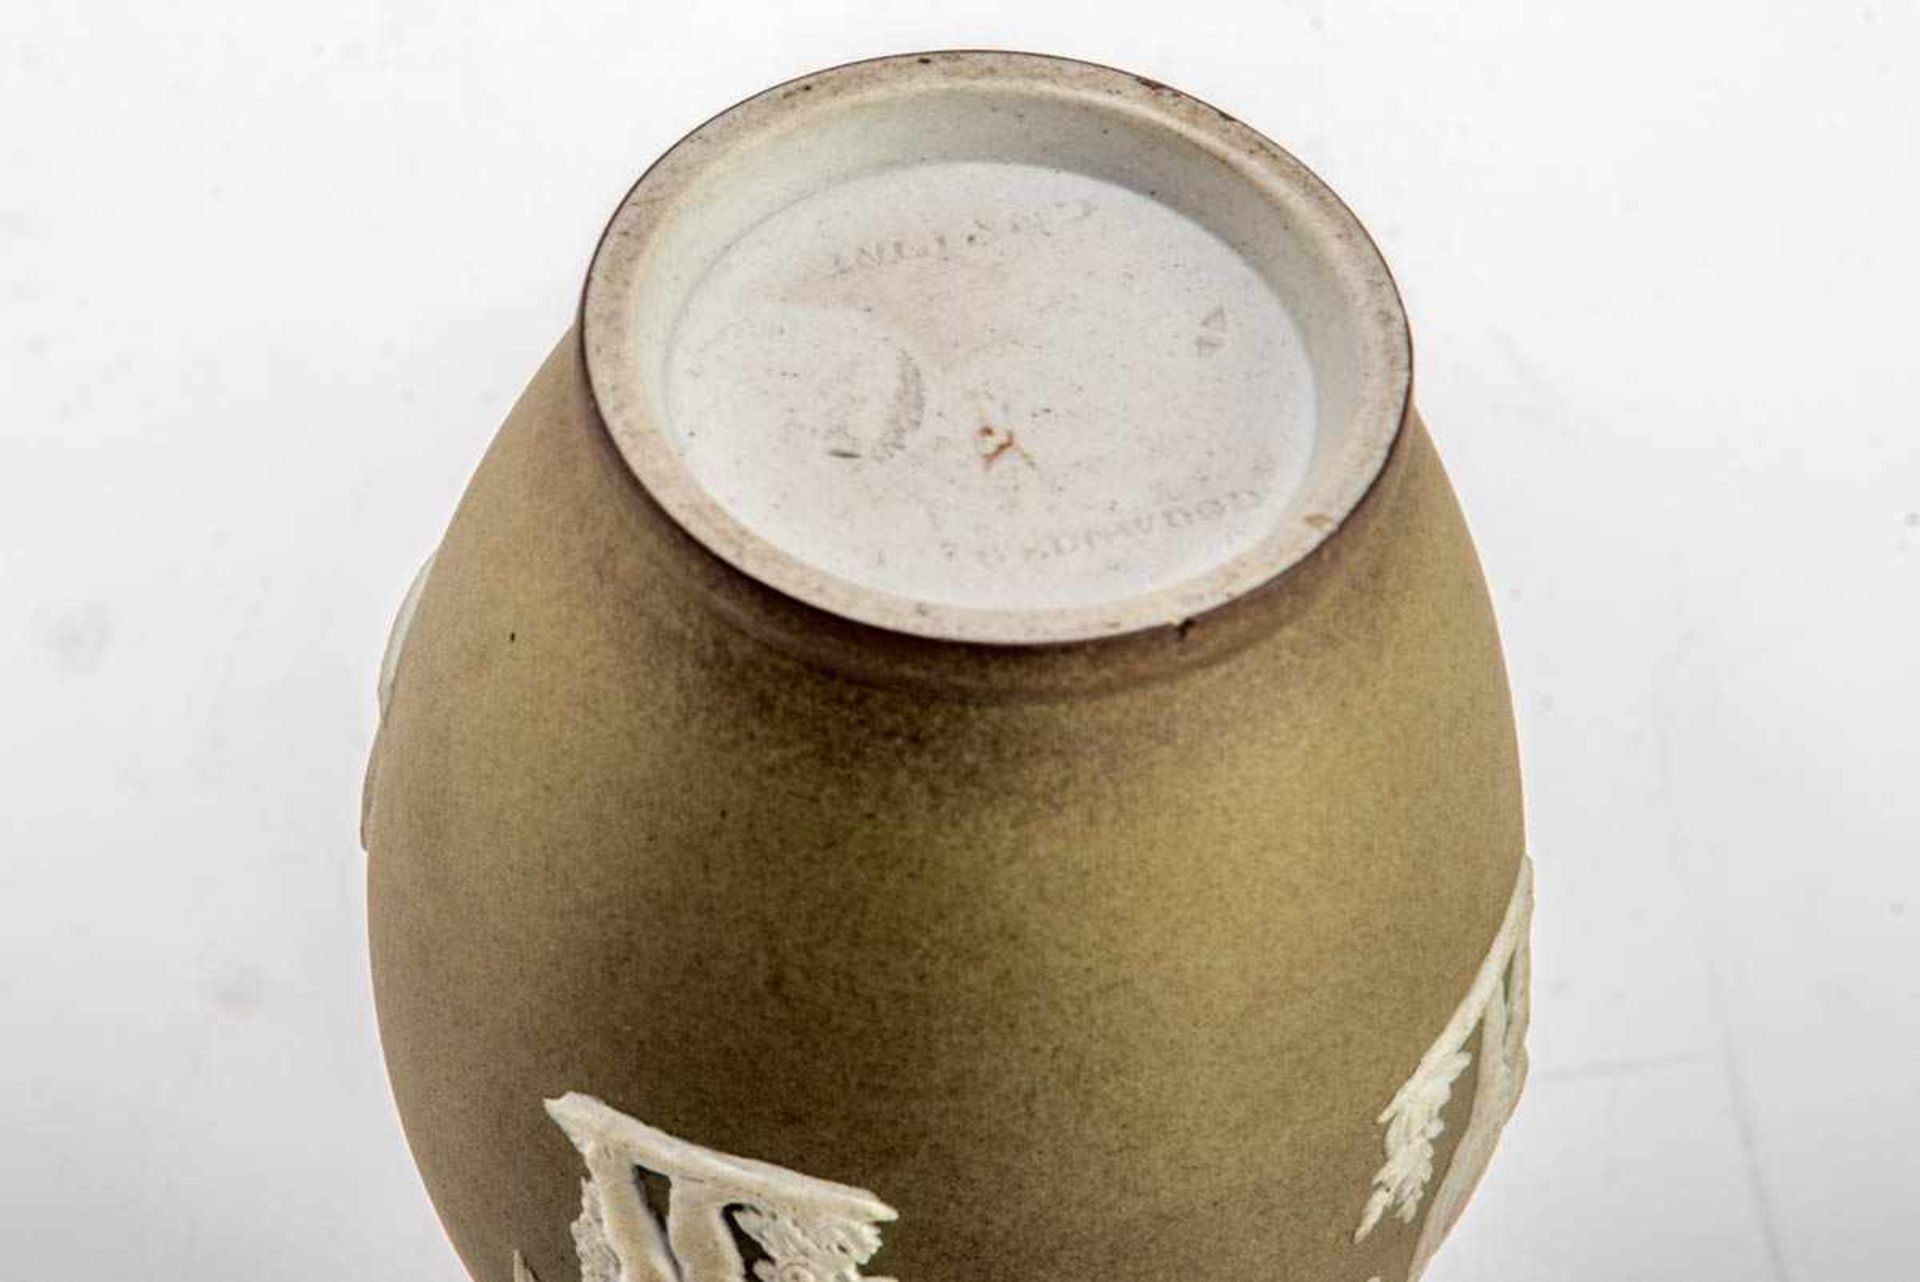 Paar Wedgwood-Vasen, 18. Jh. Feinkeramik mit matter olivgrüner Engobe, Wandung mit Putti als - Bild 2 aus 2